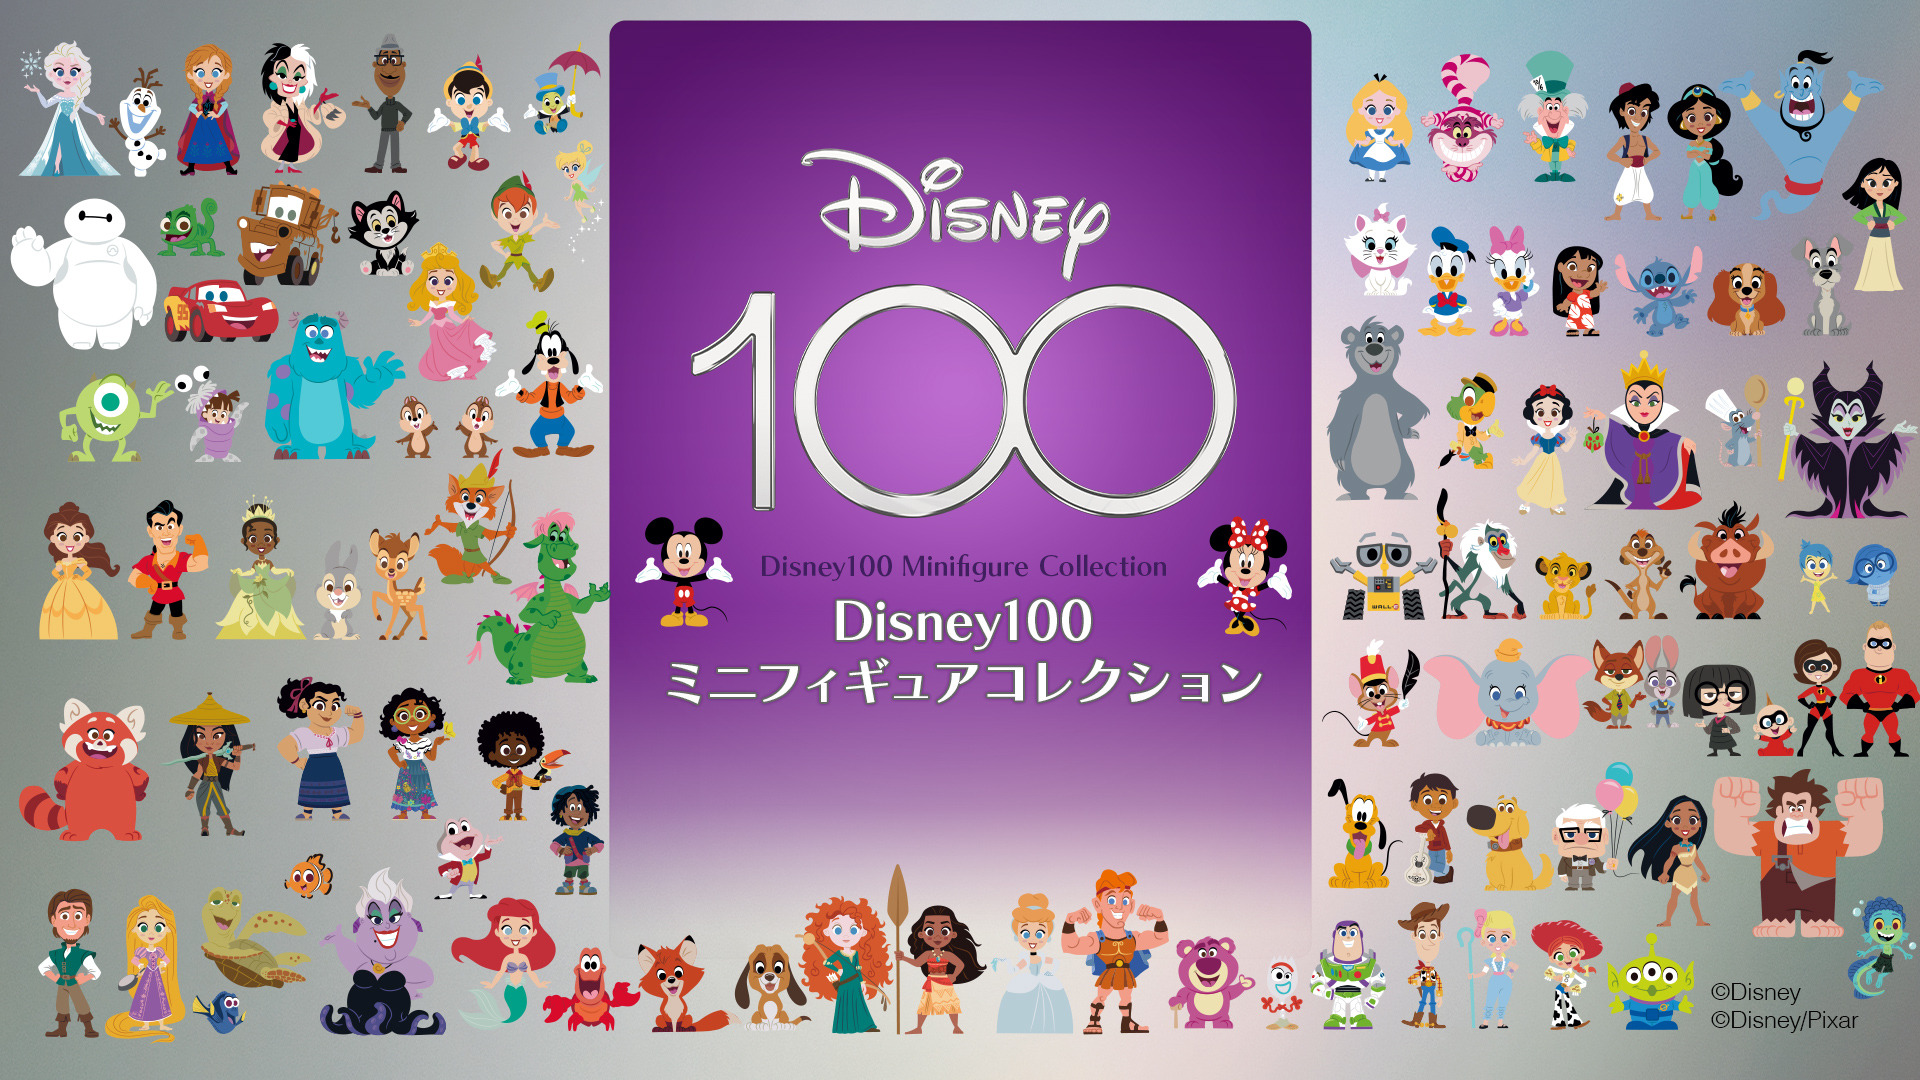 Disney100ミニフィギュアコレクションVol.1 トード氏 - コミック・アニメ